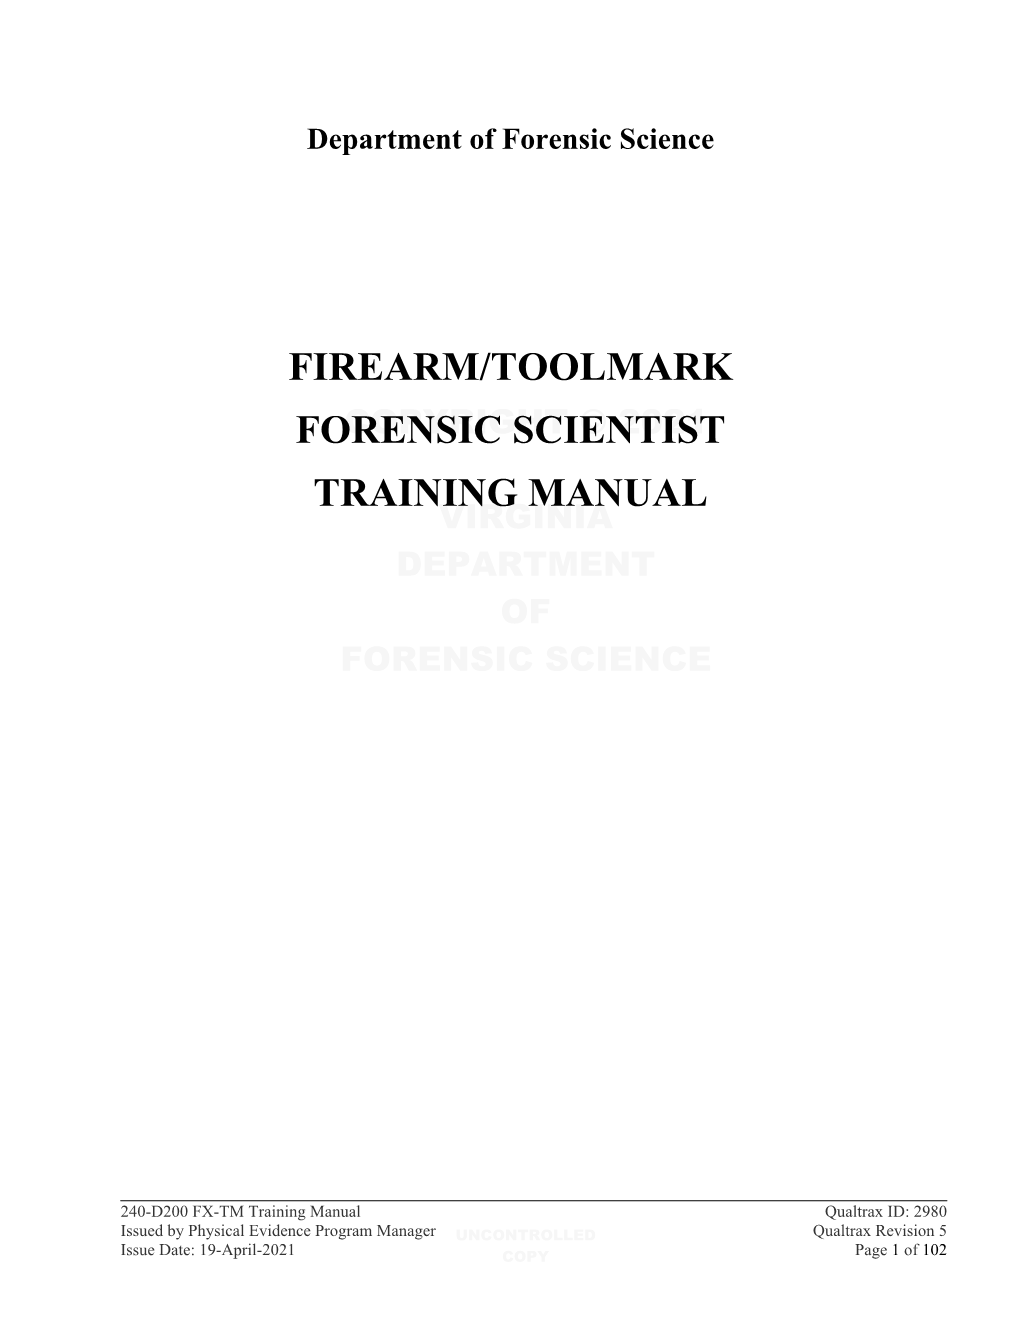 240-D200 FX-TM Training Manual